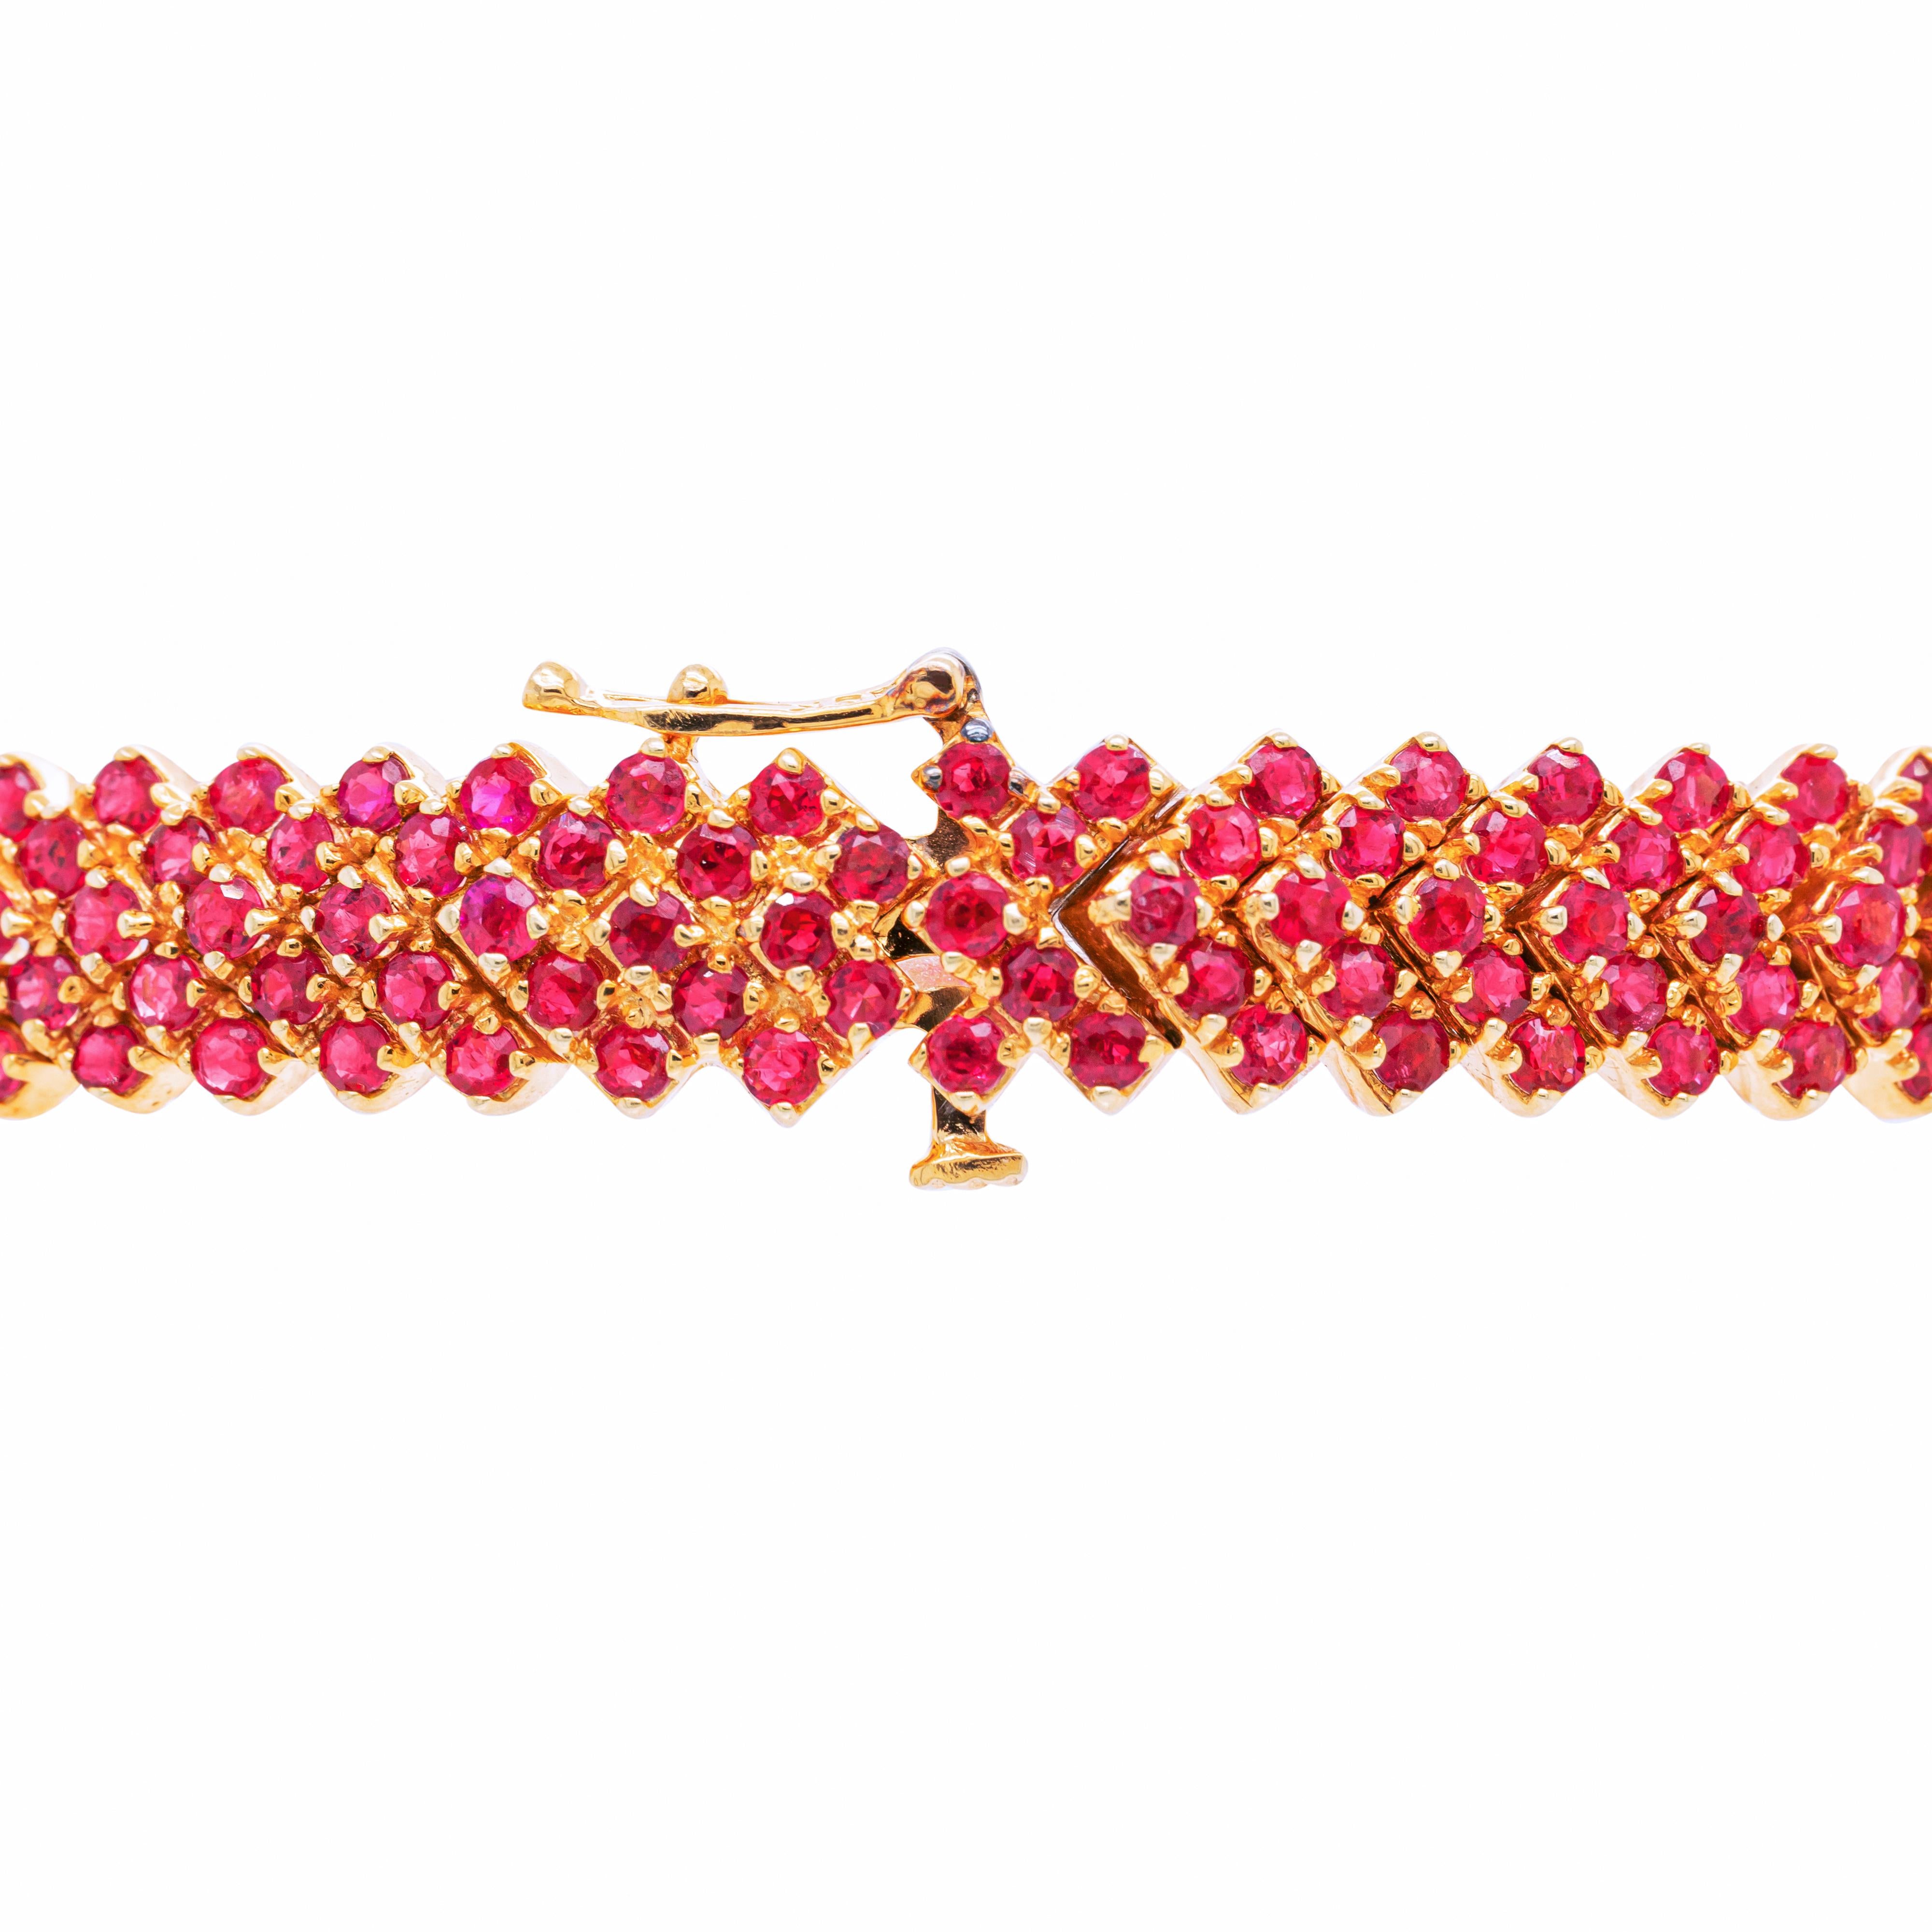 Ce magnifique bracelet présente un impressionnant ensemble de 239 rubis de taille ronde, totalisant un poids approximatif de 8,00 carats, le tout monté en or jaune 18 carats. Les rubis éclatants sont sertis en de multiples rangs obliques,